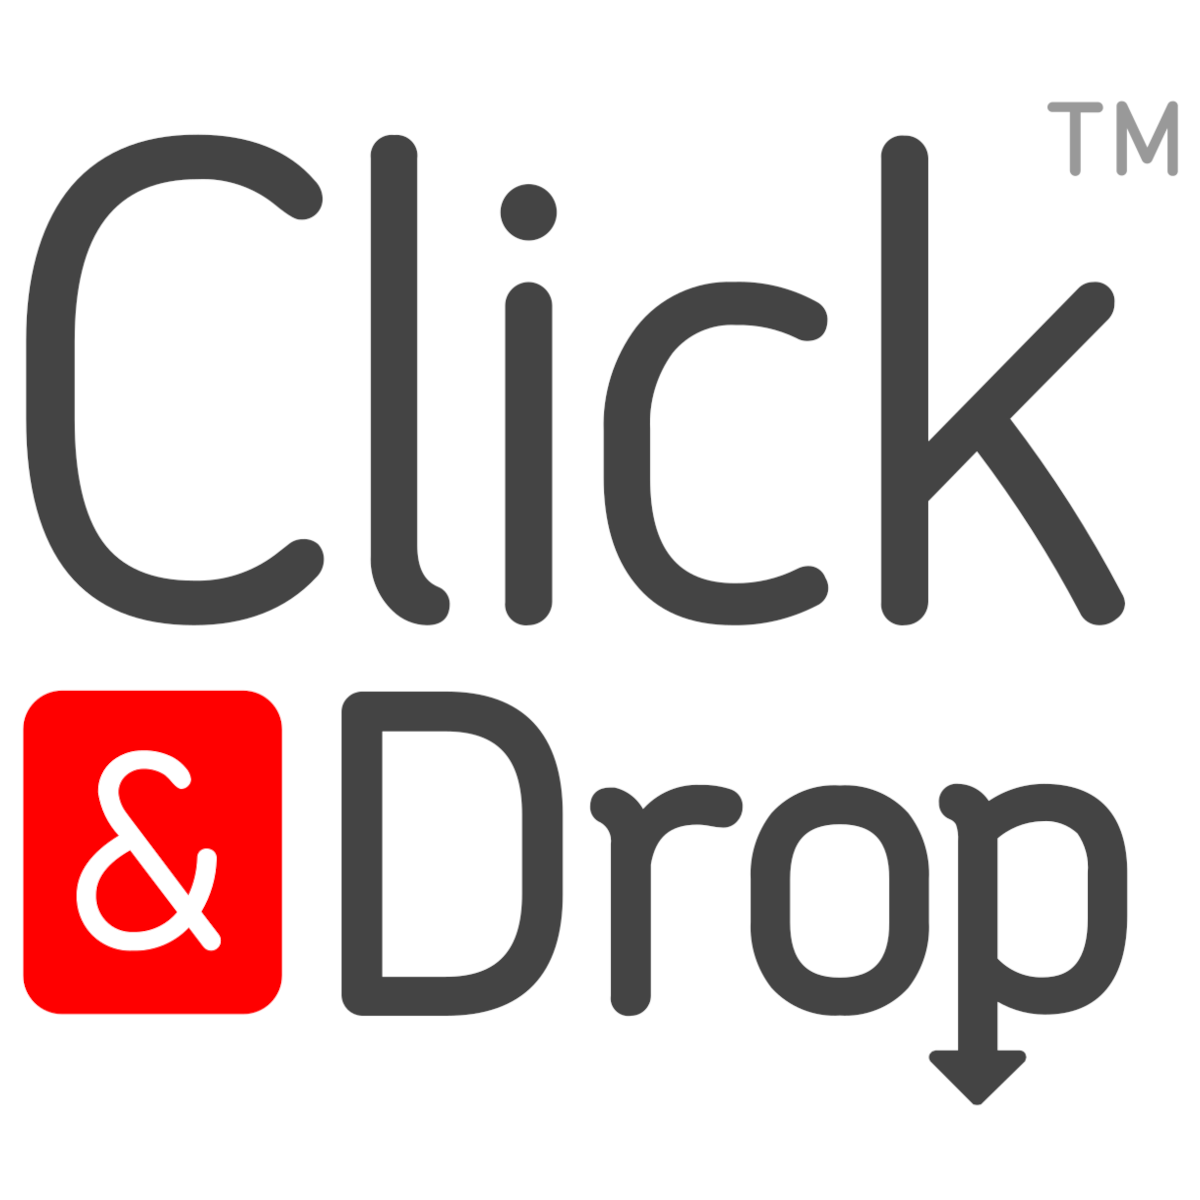 Click & Drop